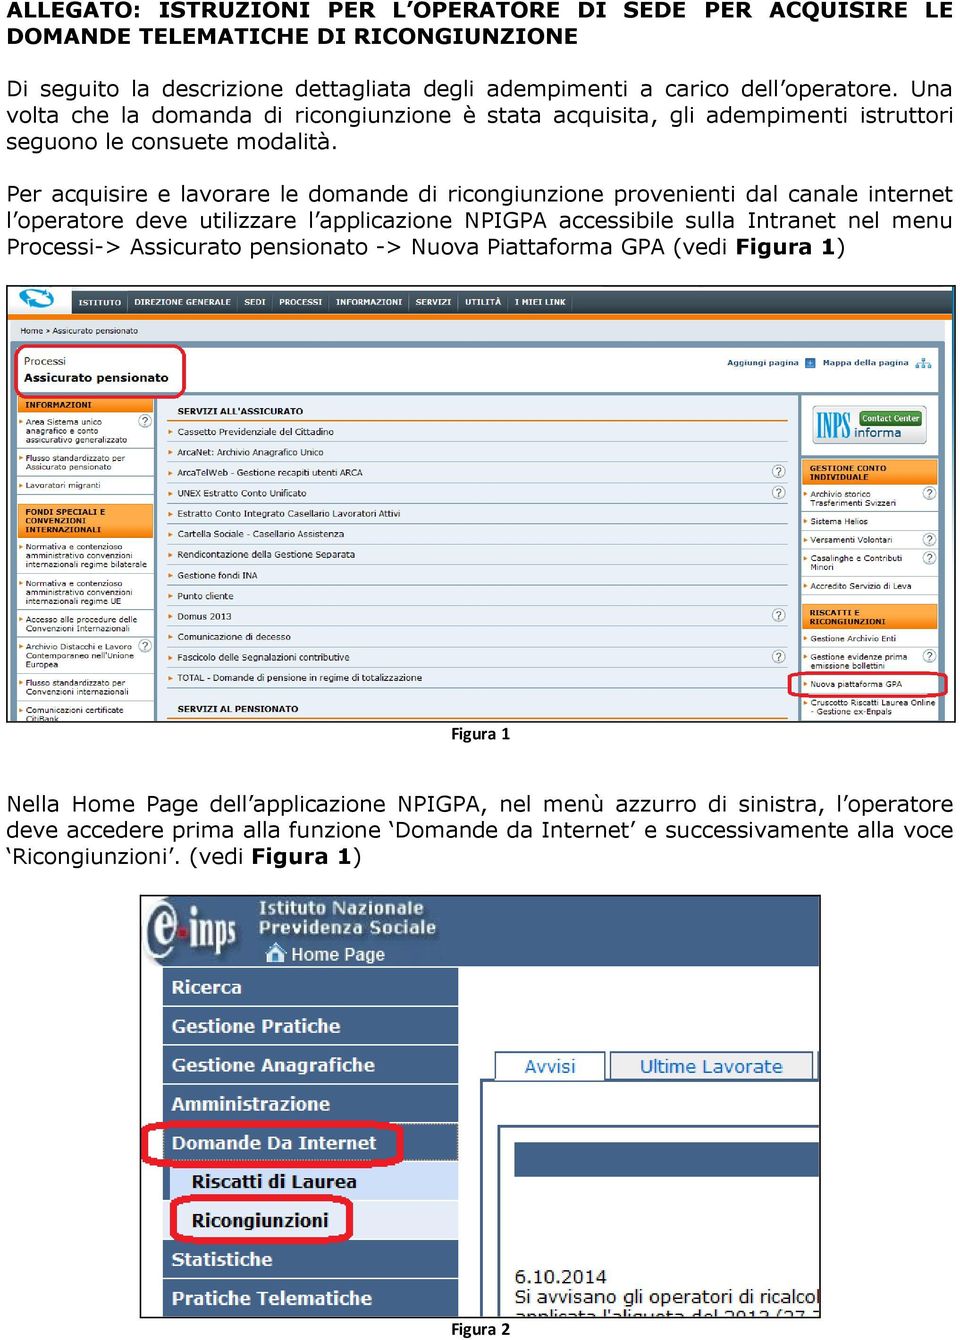 Per acquisire e lavorare le domande di ricongiunzione provenienti dal canale internet l operatore deve utilizzare l applicazione NPIGPA accessibile sulla Intranet nel menu Processi->